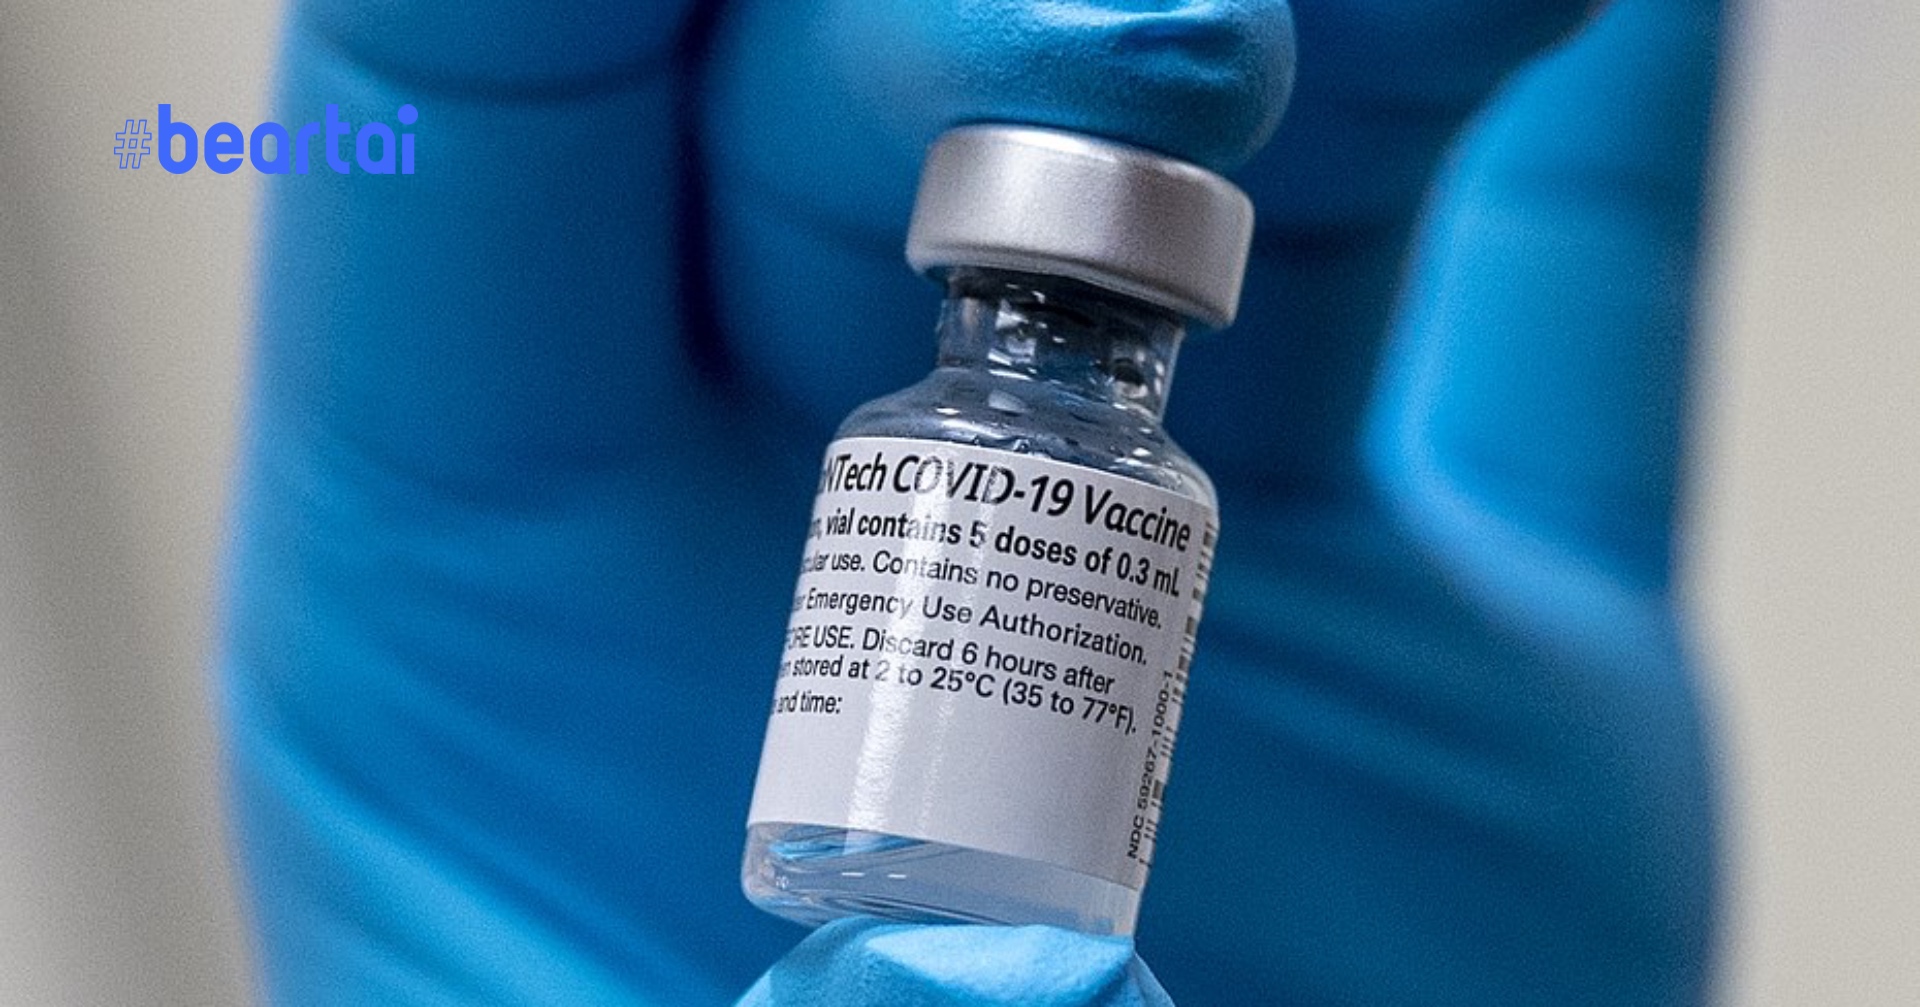 อัปเดตสถานการณ์! ตอนนี้มีวัคซีน Covid-19 กี่ตัวที่ได้รับการอนุมัติแล้ว